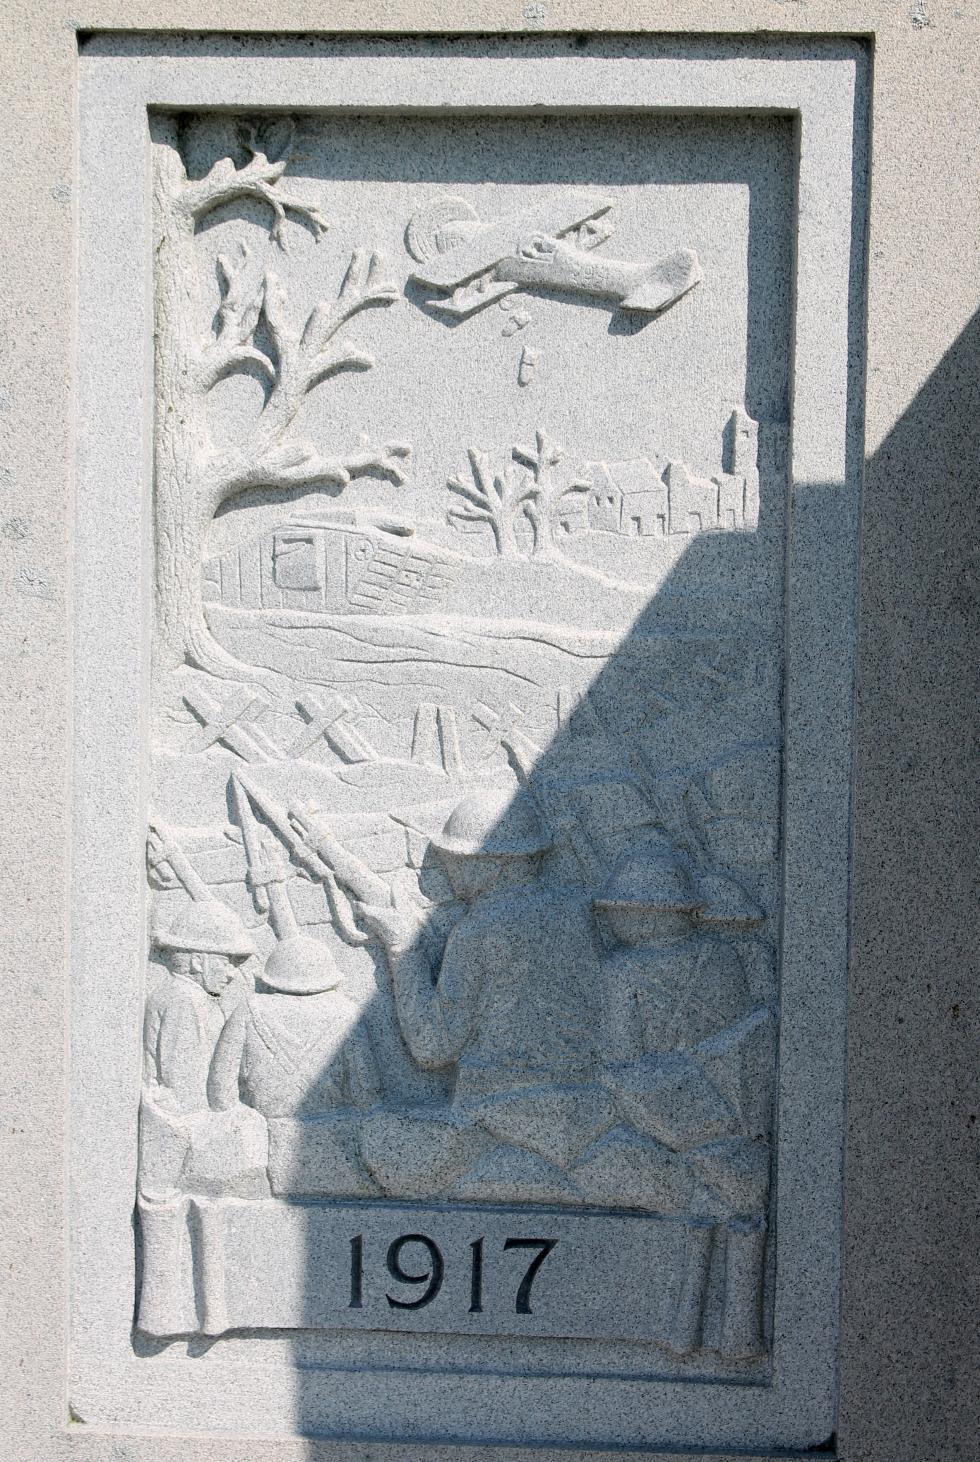 Hull Massachusetts World War I Veterans Memorial